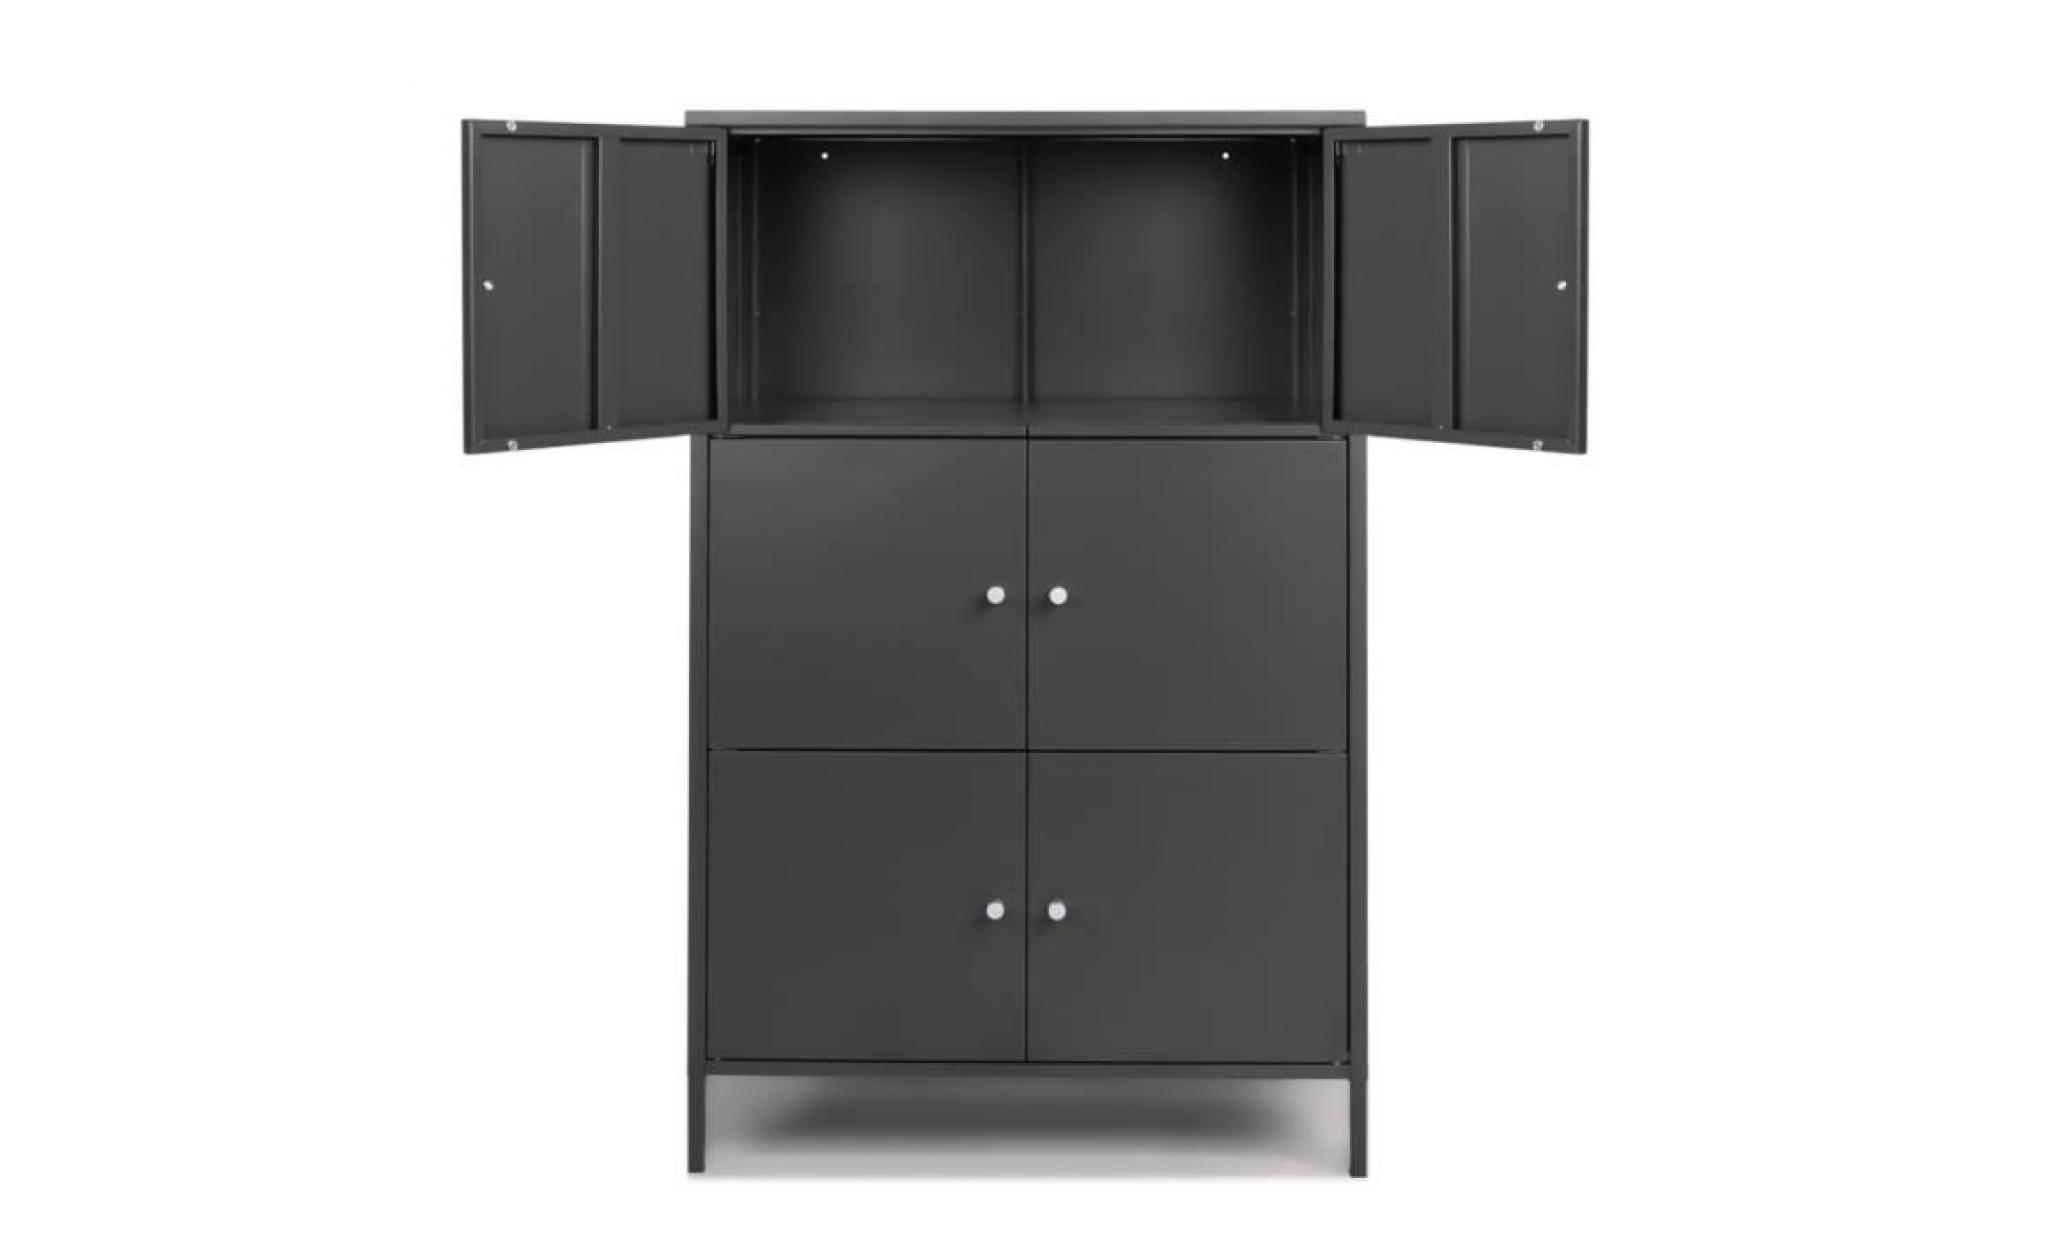 ikayaa 6 portes armoire de rangement en métal moderne armoires de rangement locker chambre salle de bains meubles pas cher